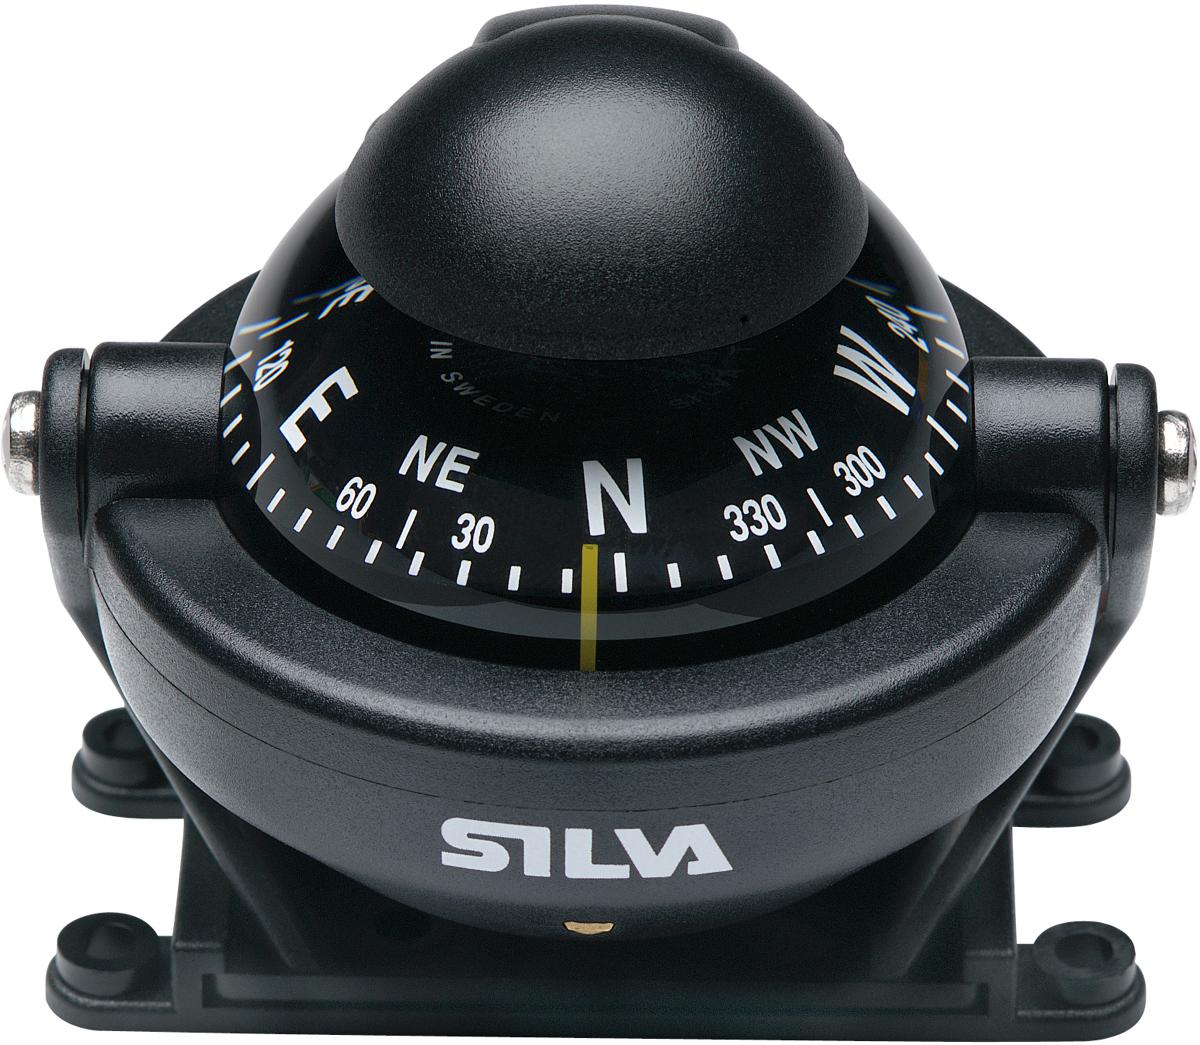 Silva Fahrzeugkompass C58 für Auto und Boot 